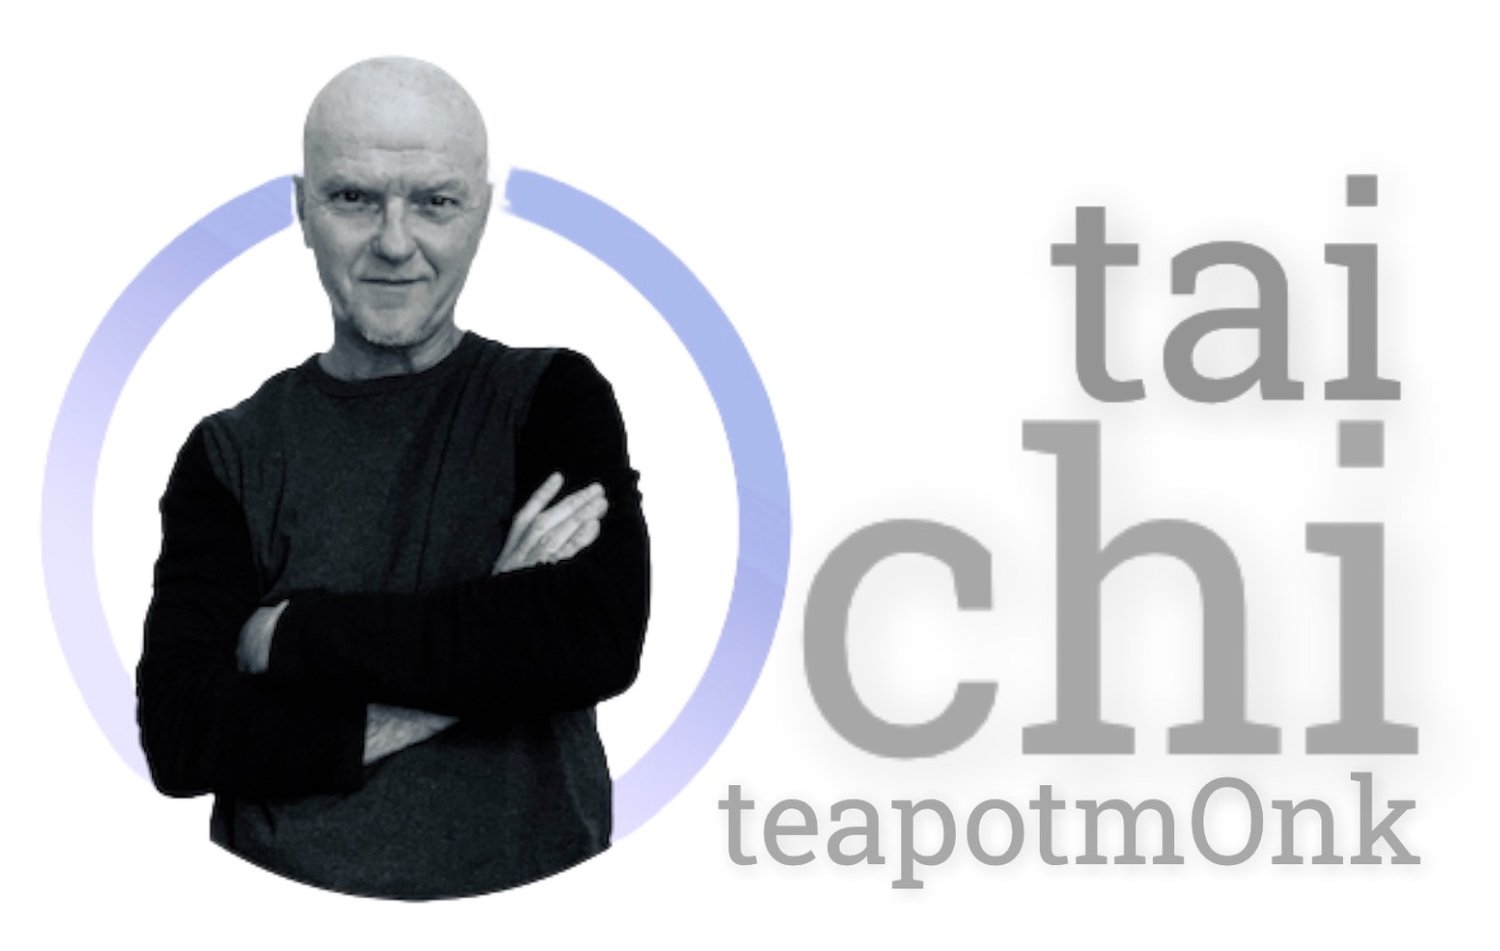 Teapotmonk Tai Chi 